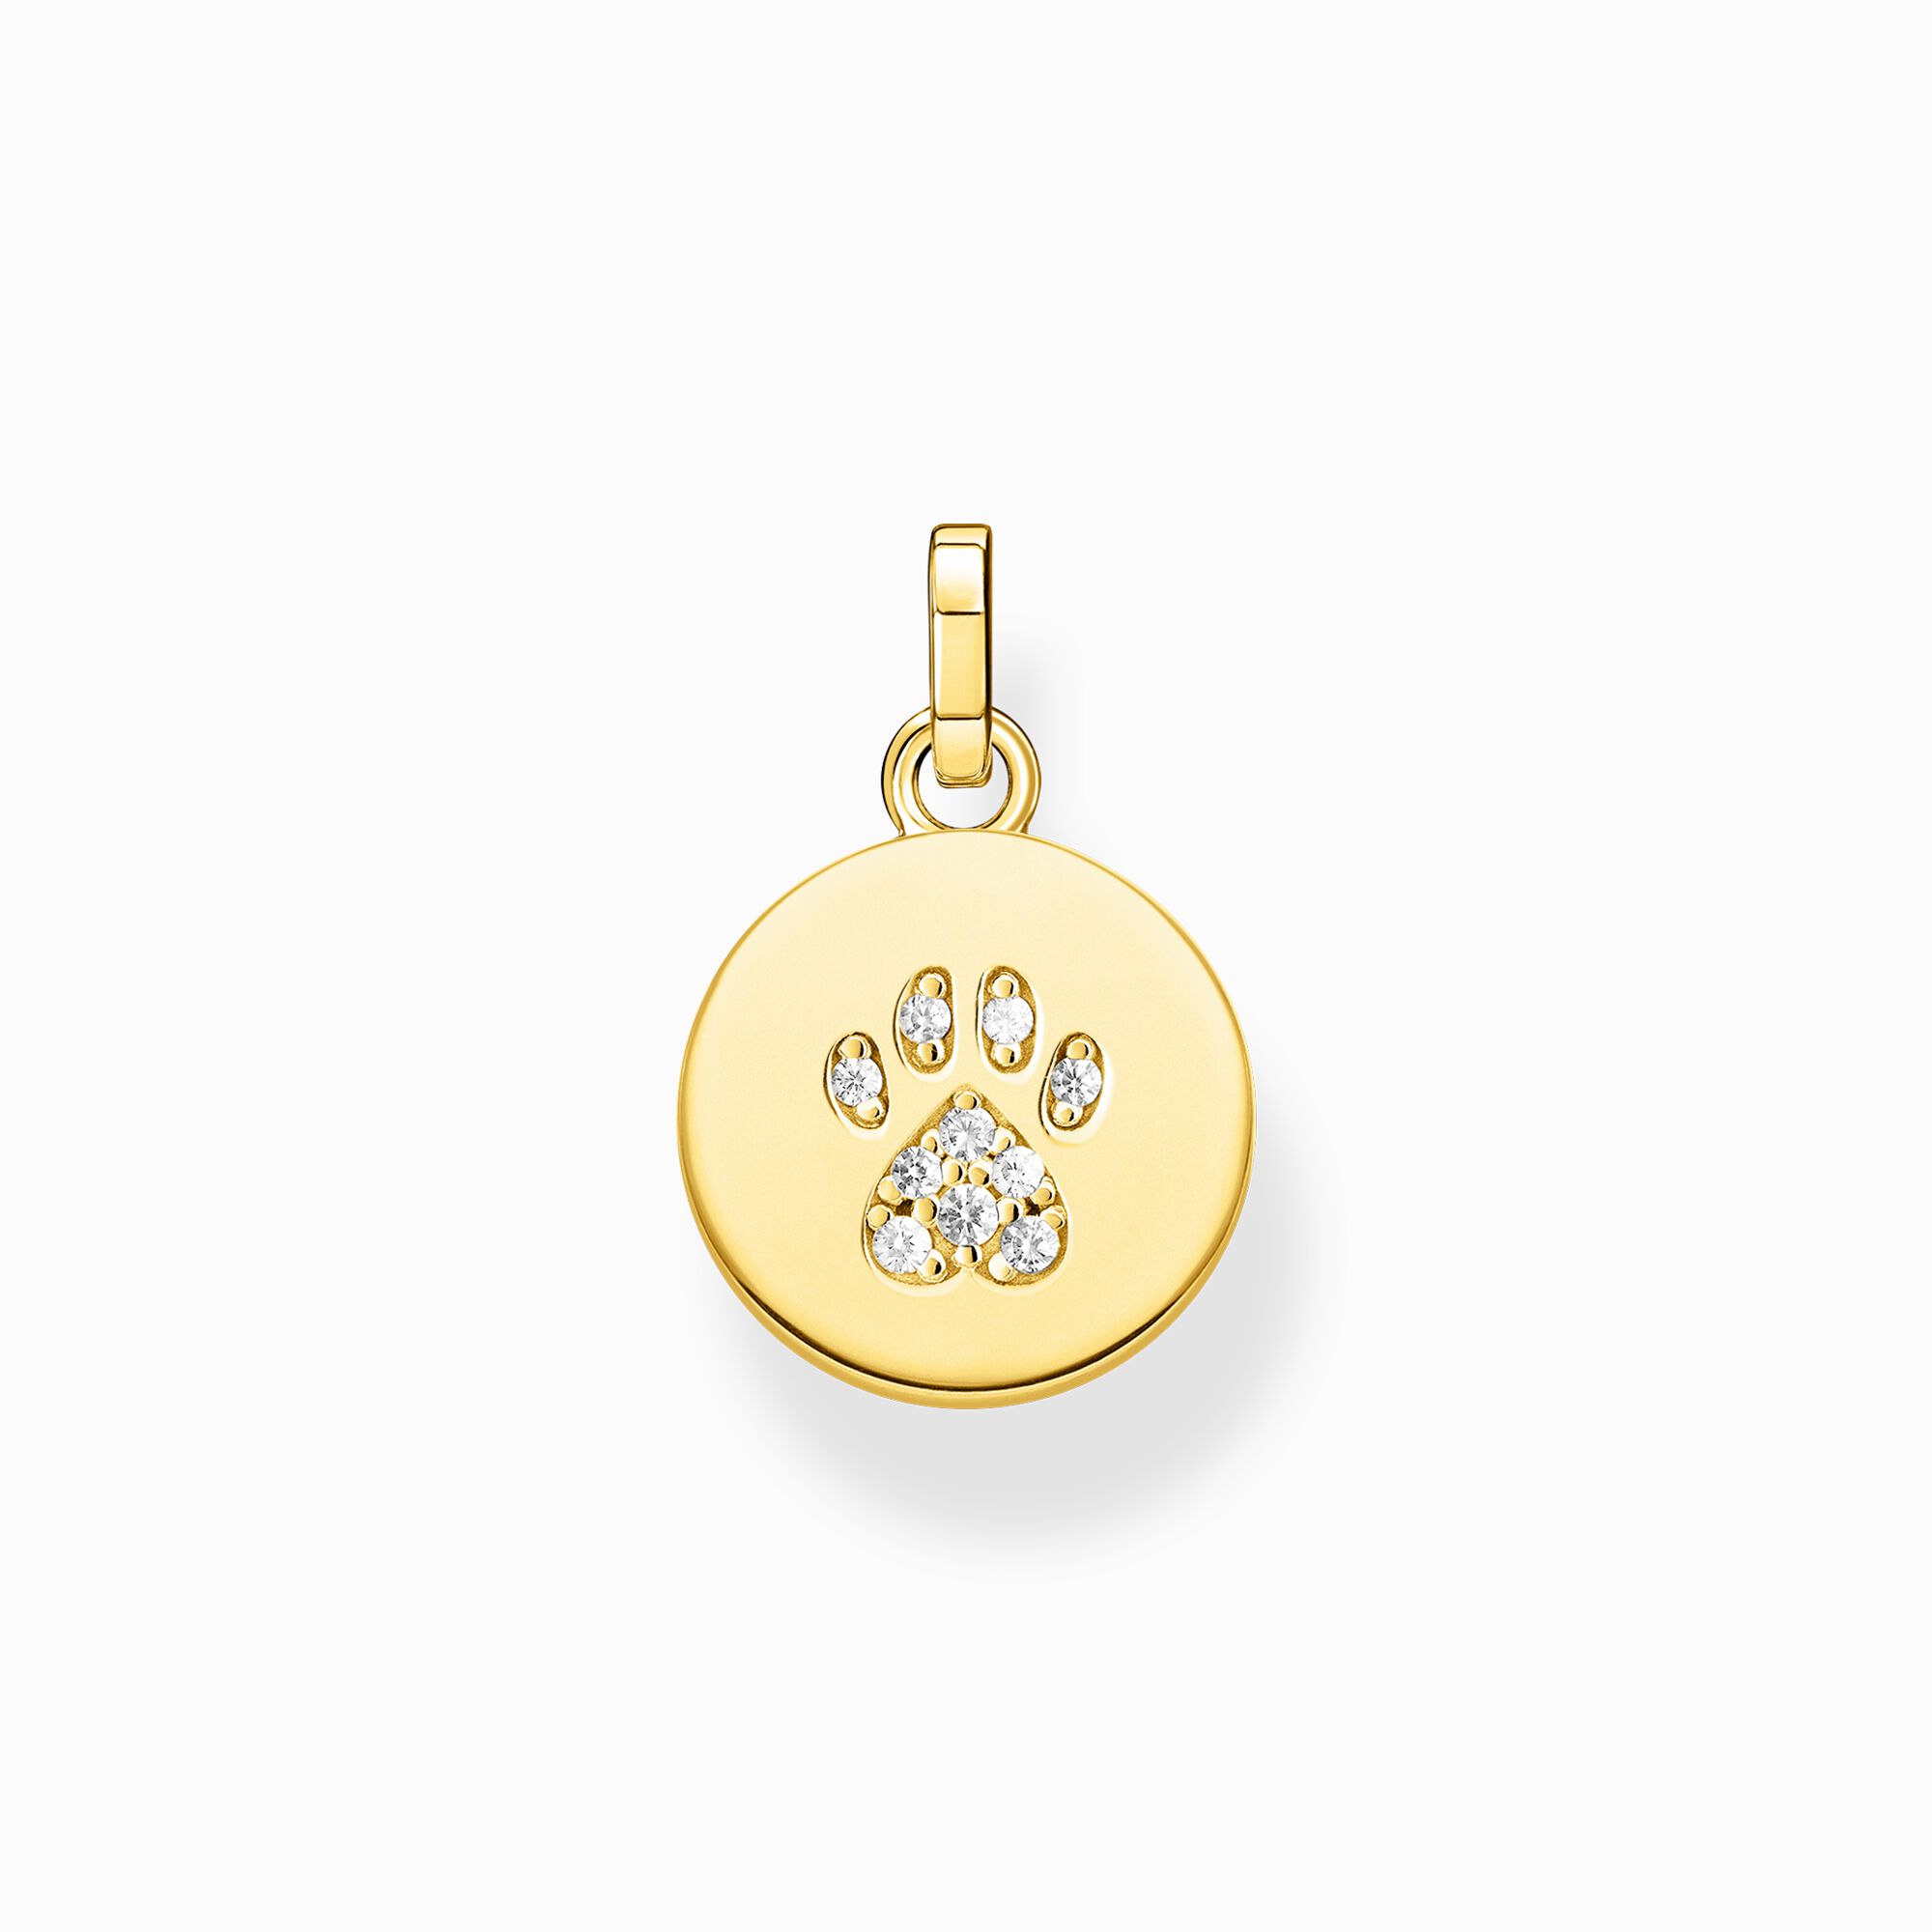 Colgante medalla pata gato oro de la colección  en la tienda online de THOMAS SABO